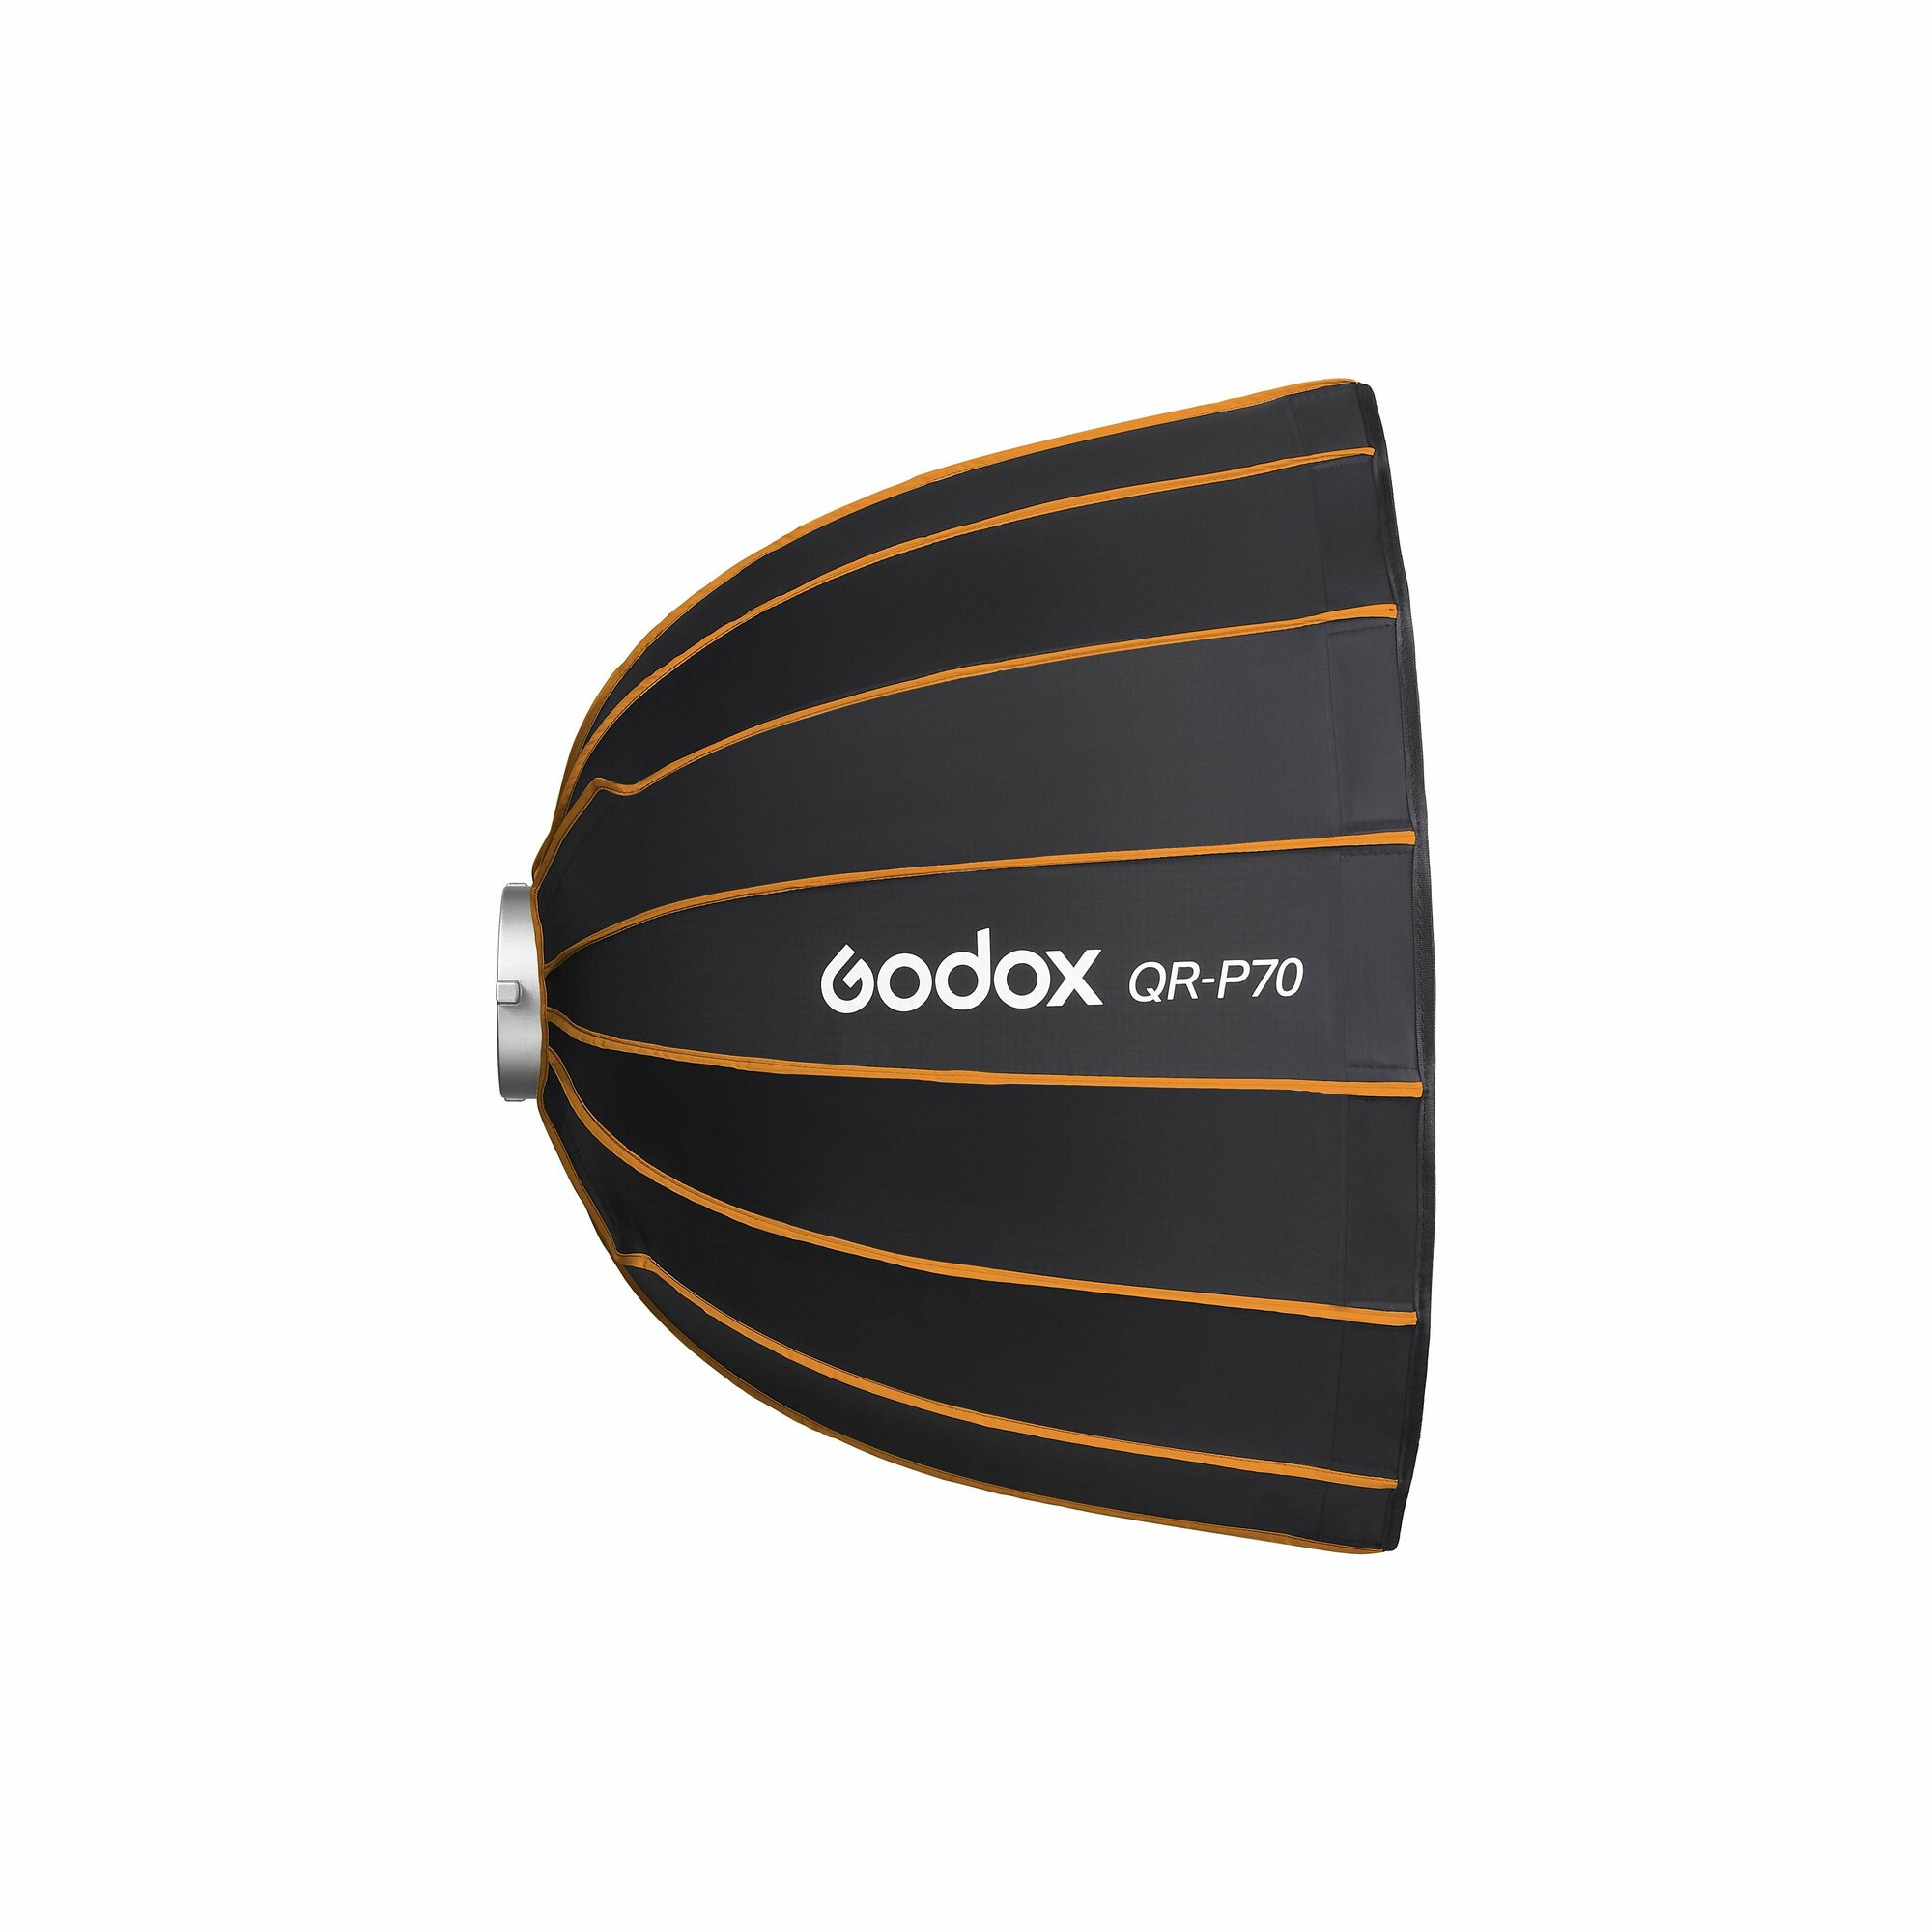 Софтбокс Godox QR-P70 параболический, 70 см, быстроскладной для вспышек и светодиодных осветителей с байонетом Bowens, студийный свет